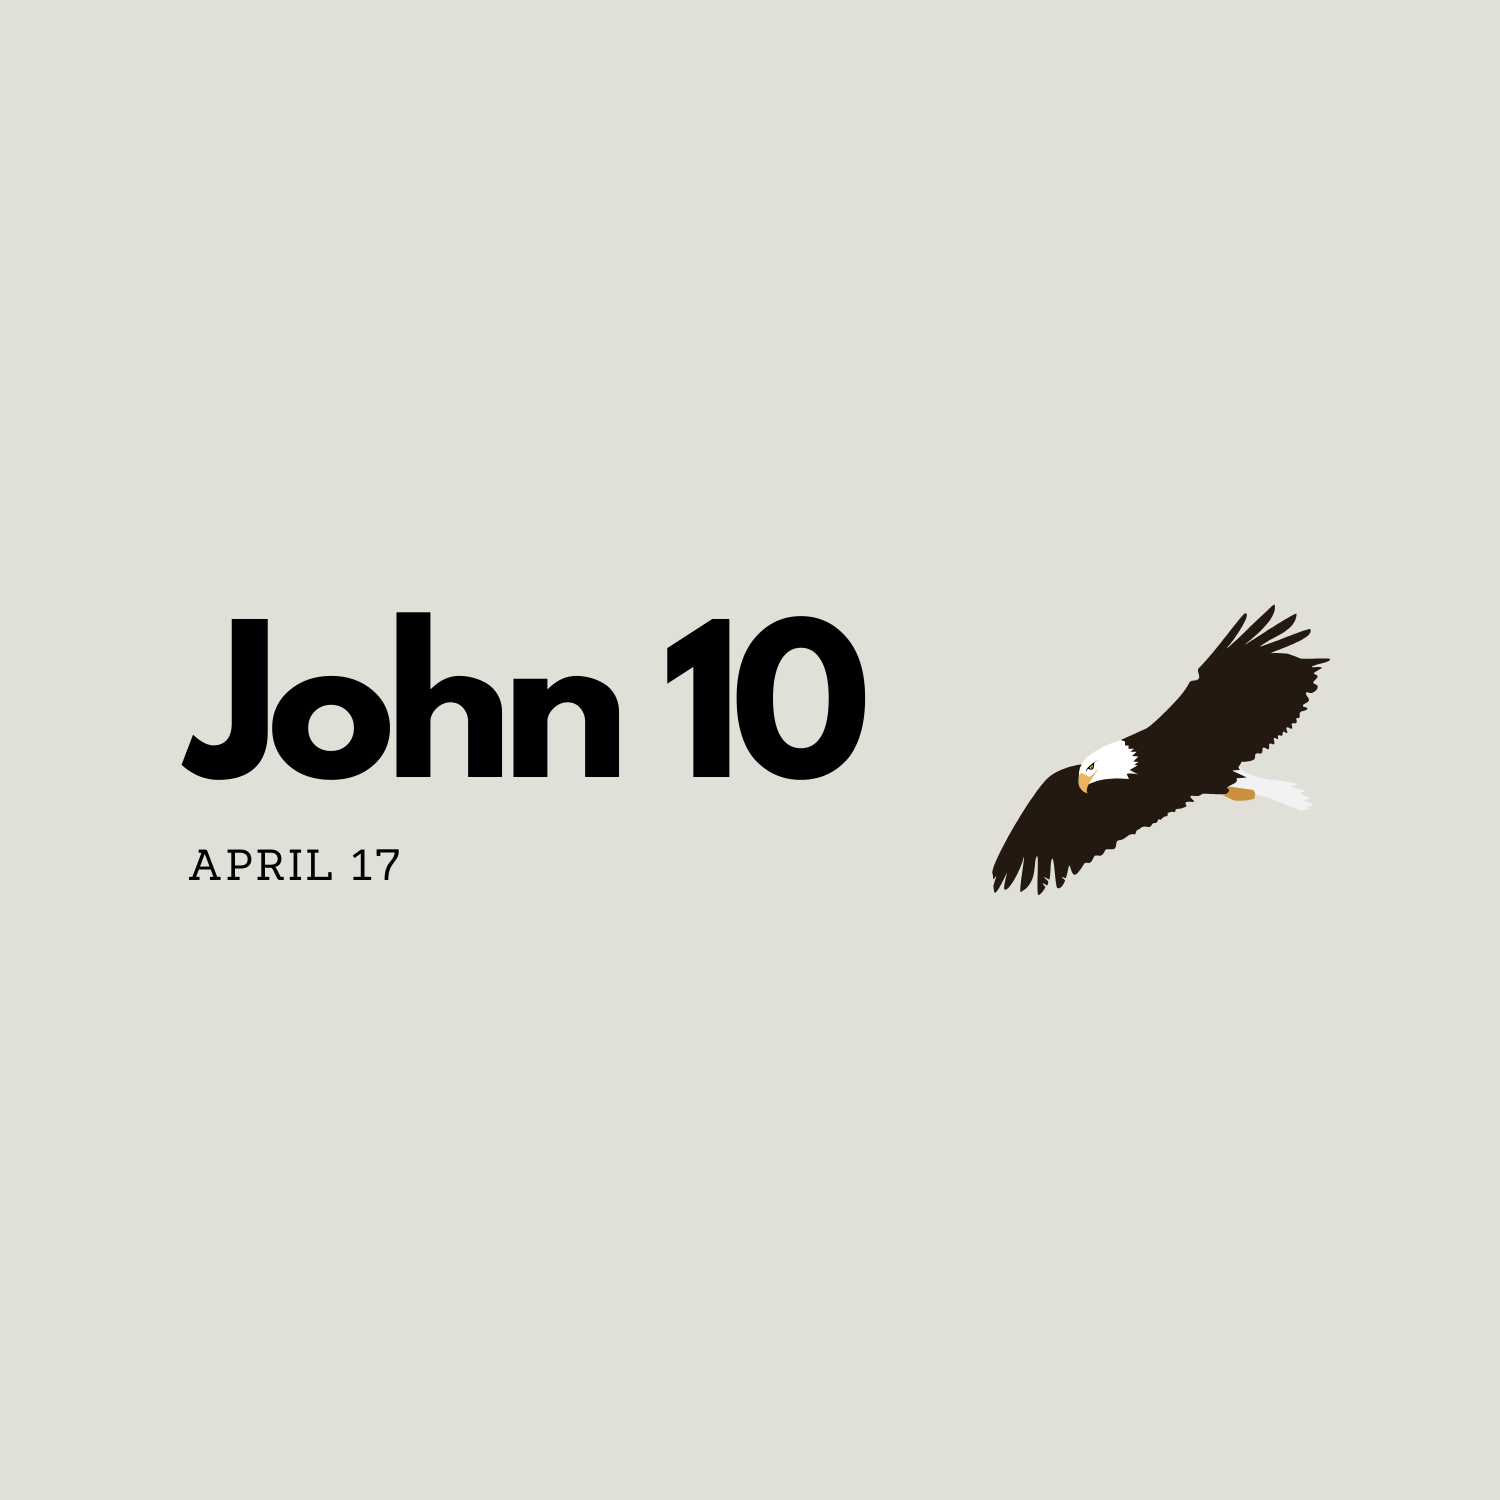 April 17: John 10